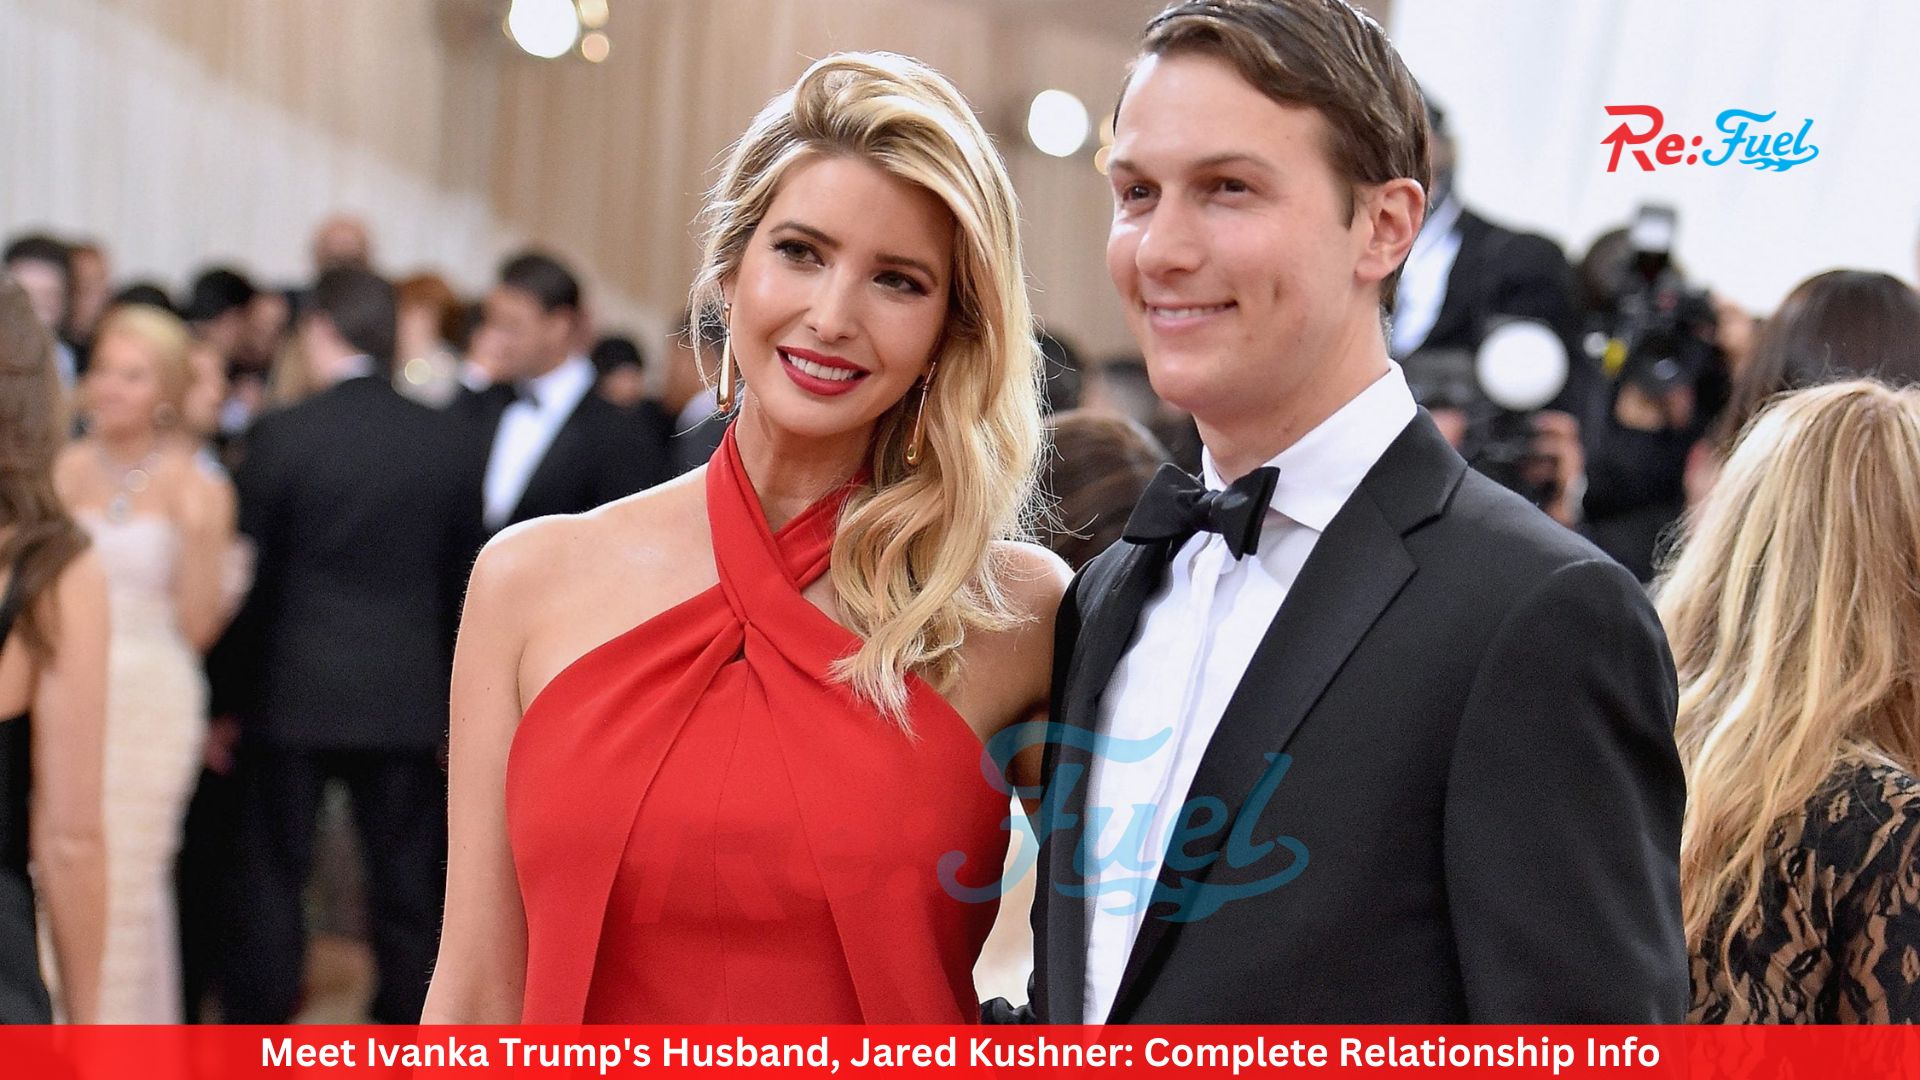 Meet Ivanka Trump's Husband, Jared Kushner: Complete Relationship Info